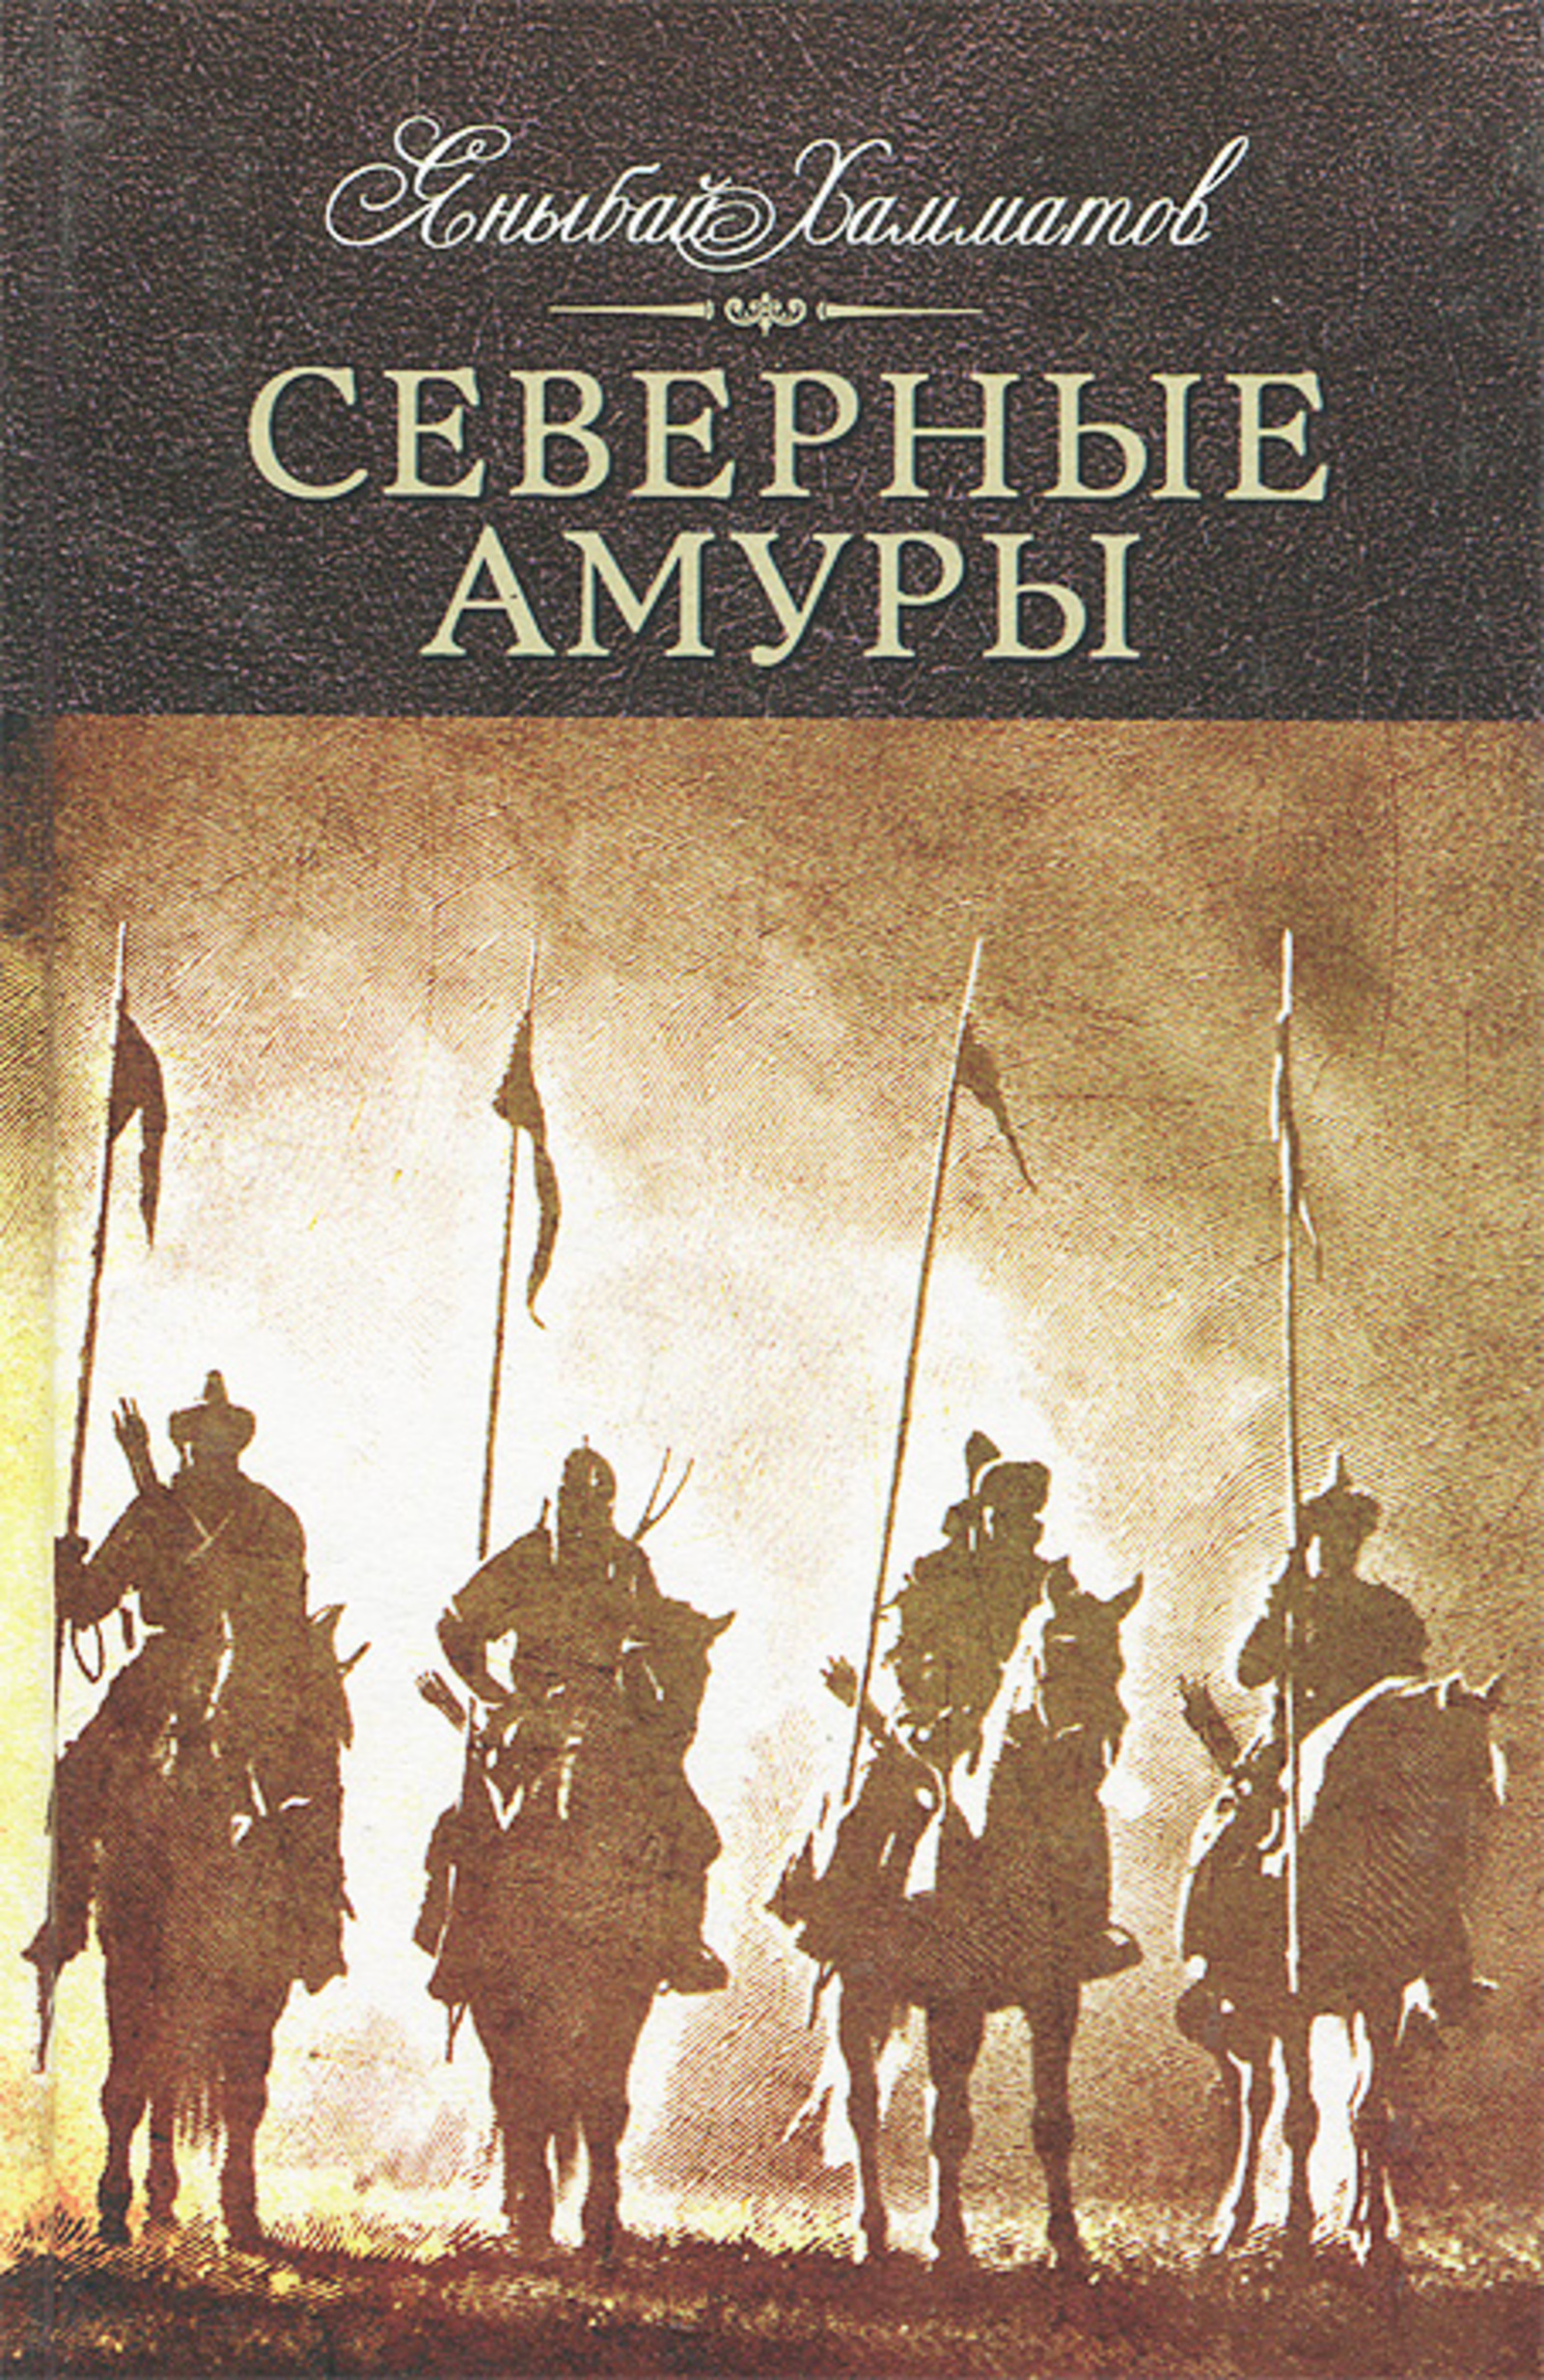 Этнографический роман Яныбая Хамматова «Северные амуры»